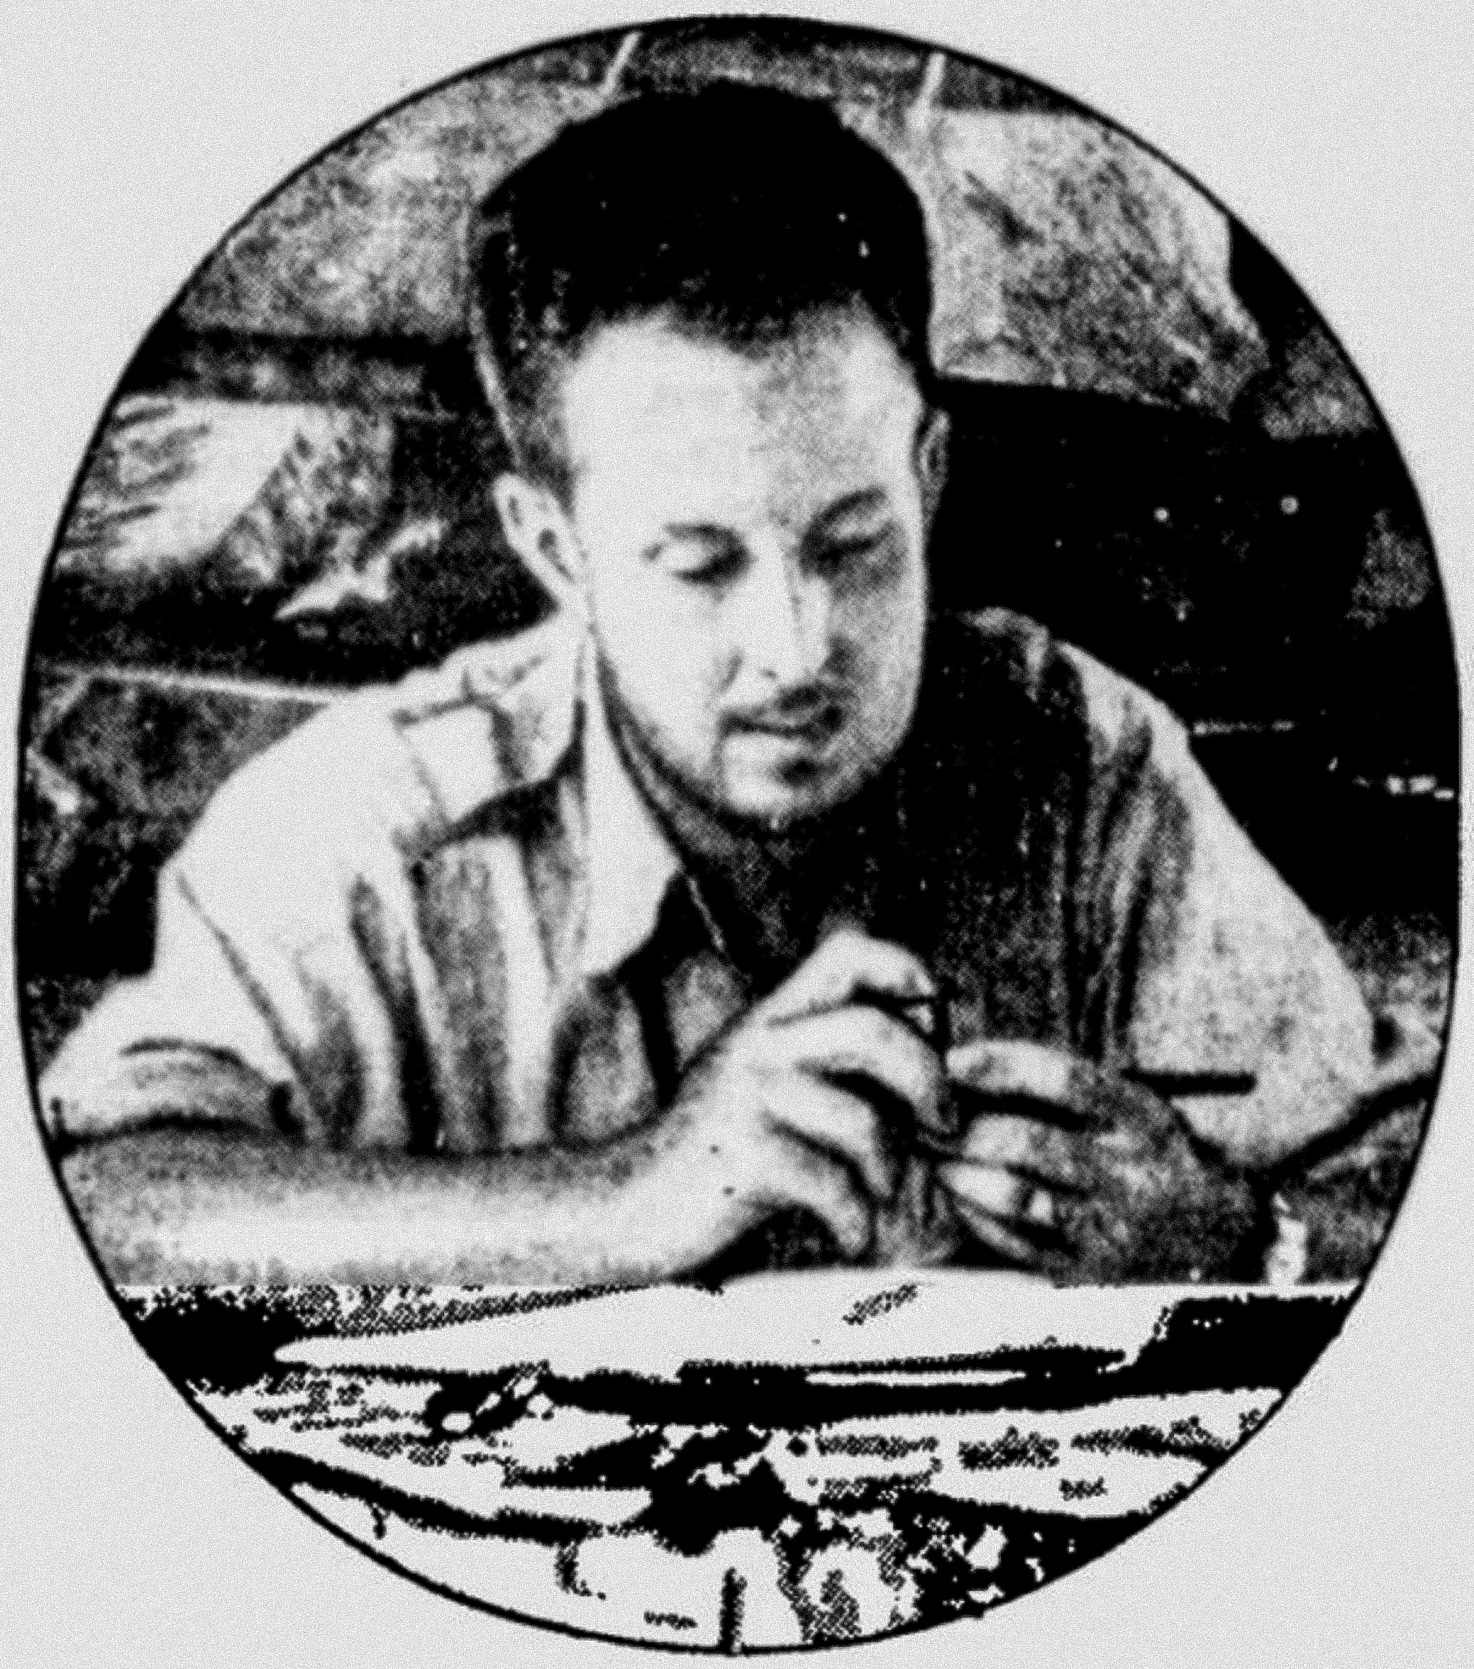 અમેરિકન સંશોધક થિયોડોર મોર્ડે 1940 માં લા મોસ્કિટિયાની શોધખોળ કરતી વખતે હોન્ડુરાન રેઈનફોરેસ્ટમાં તેમના ડેસ્ક પર બેઠેલા